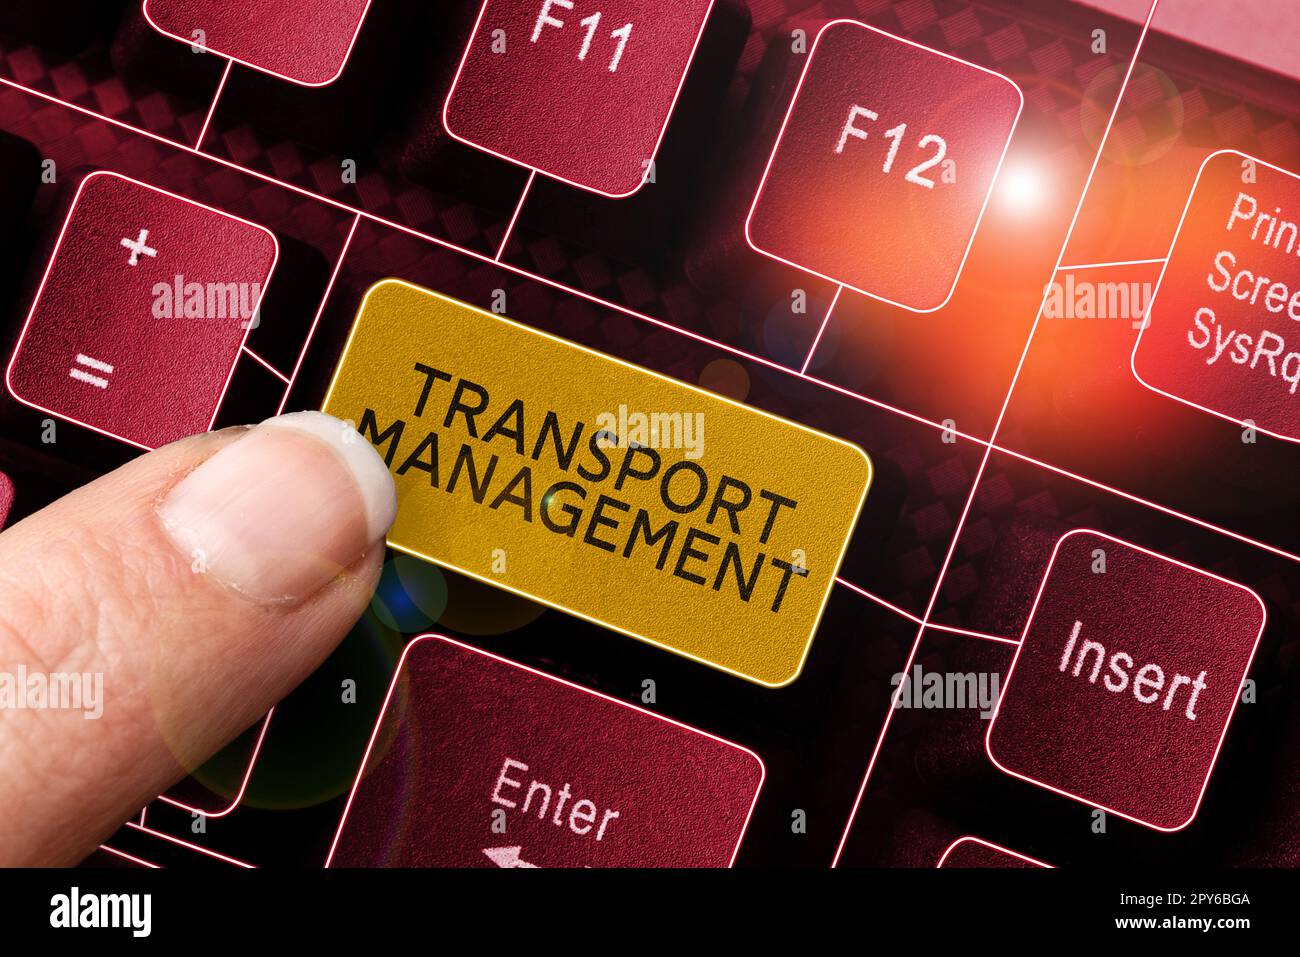 Handgeschriebenes Schild Transport Management. Geschäftsbeispiele für die Verwaltung von Fahrzeugwartung und -Betrieb Stockfoto